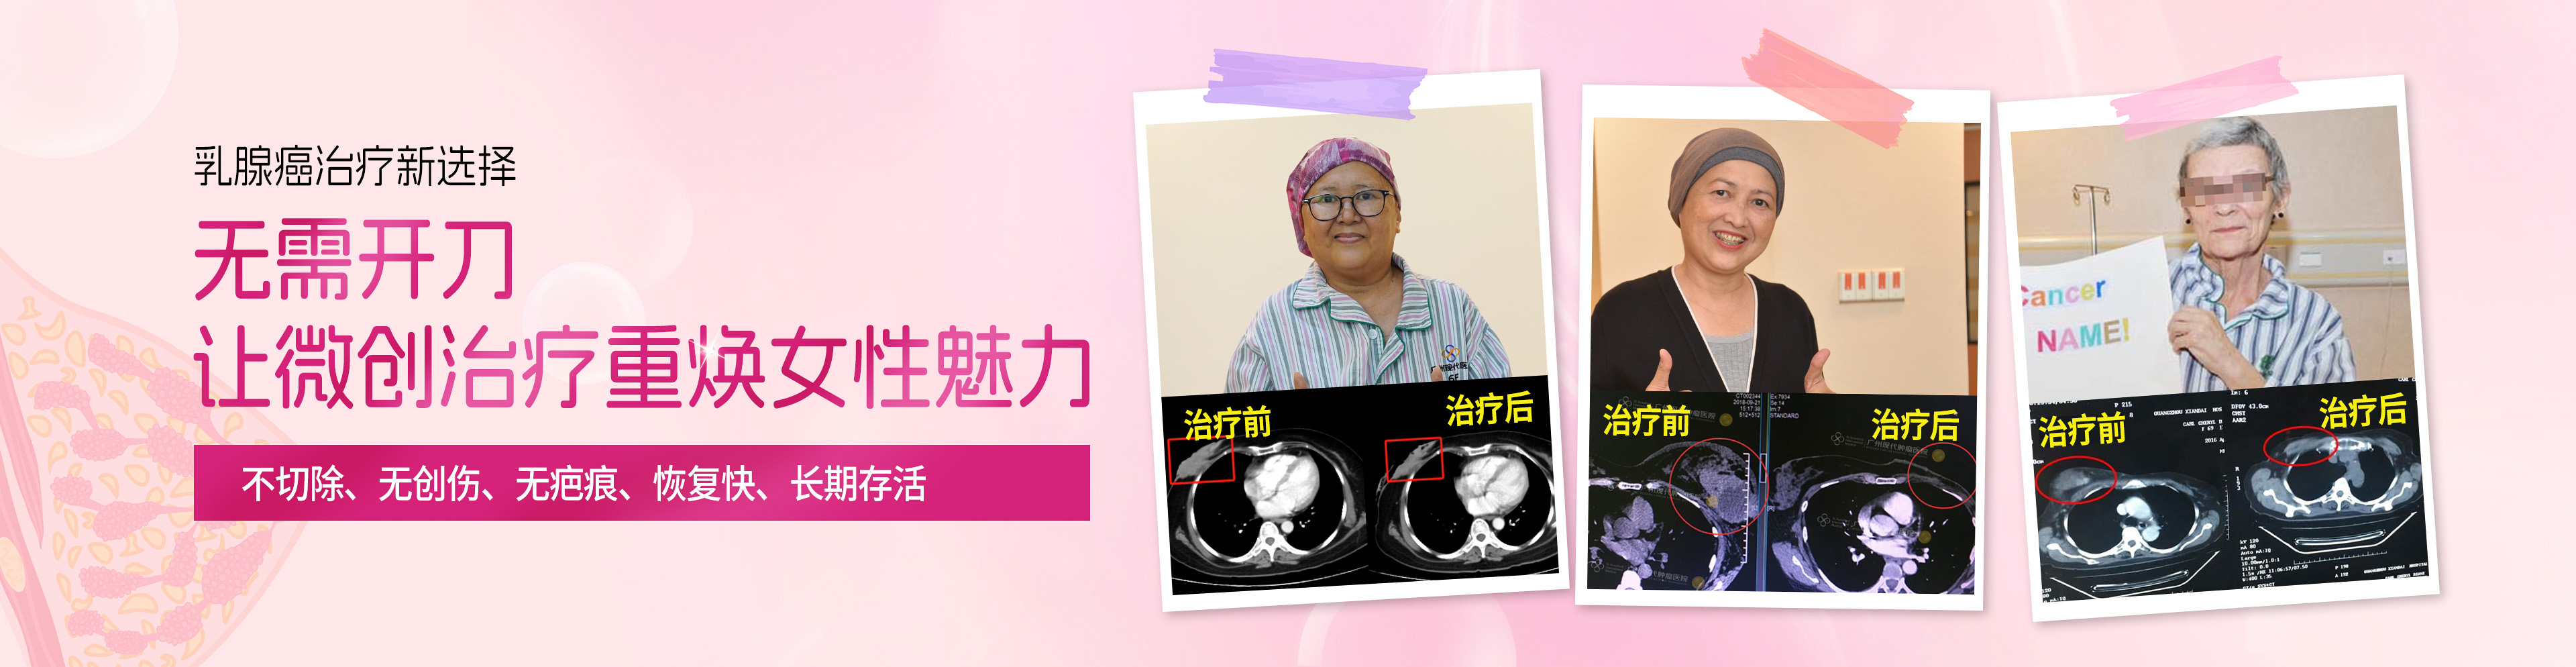 https://www.moderncancerhospitalmy.com/cn/banner/cn/8207.html